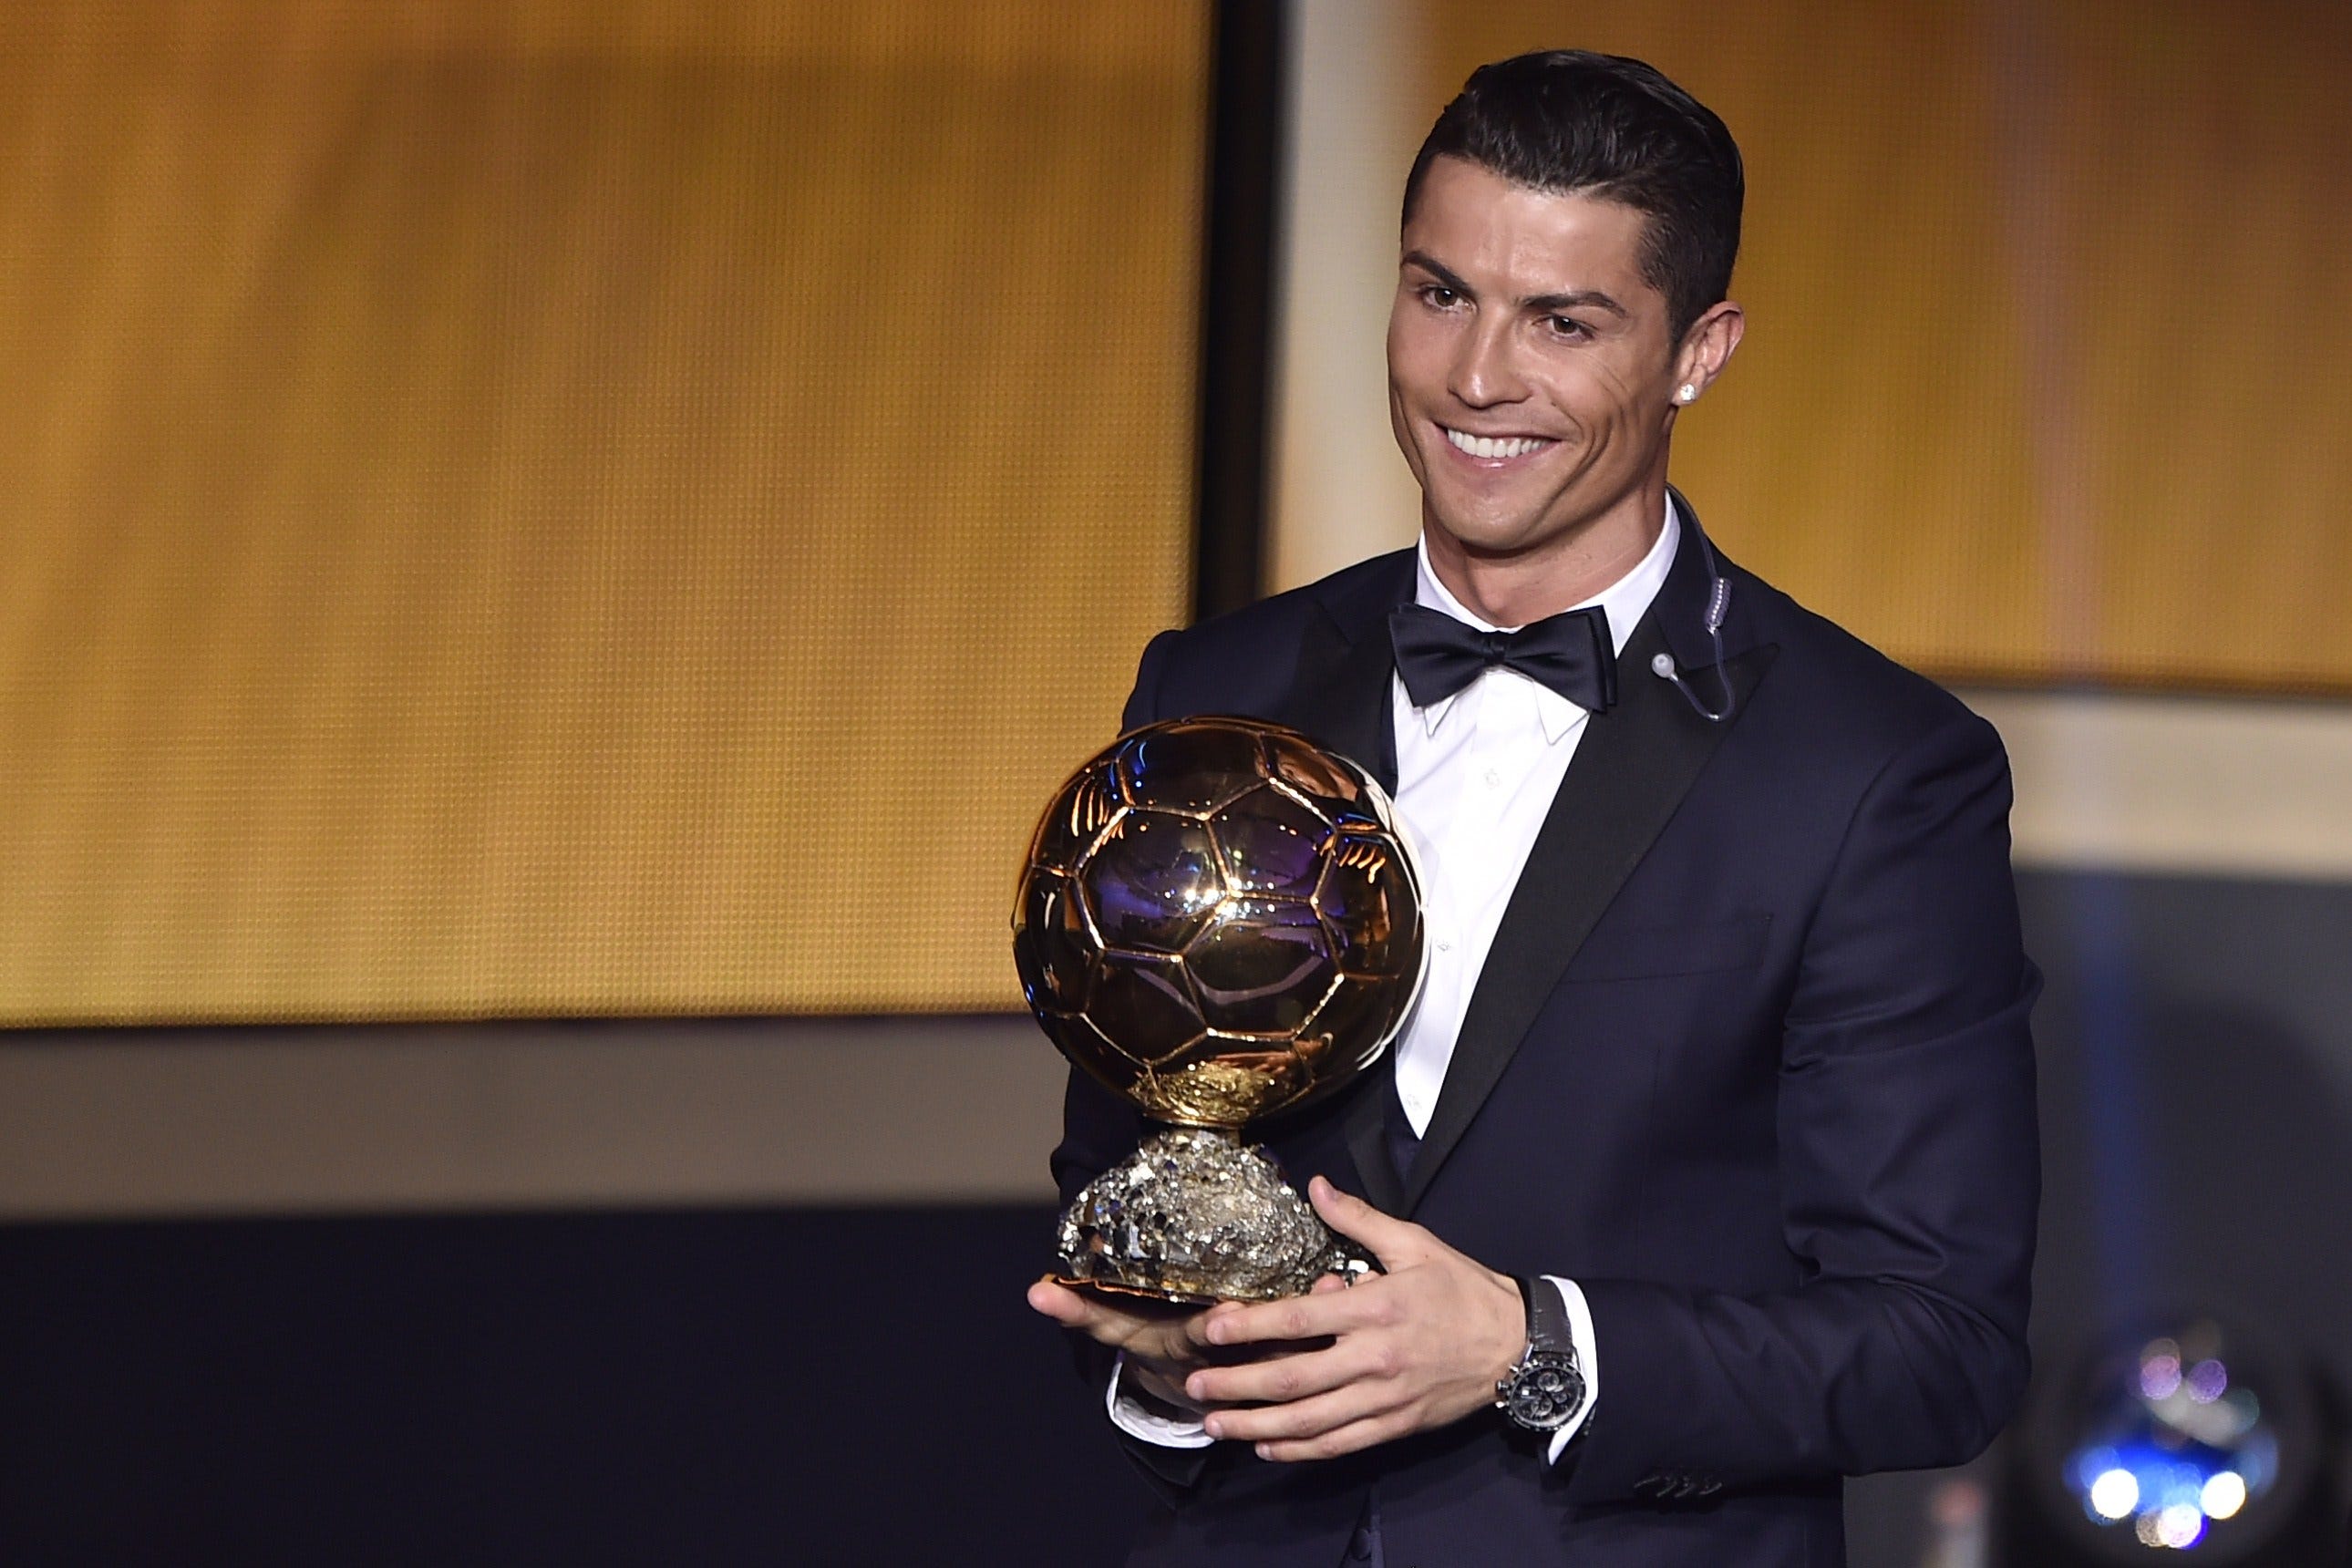 Cristiano Ronaldo wins FIFA Ballon d'Or award for 2014